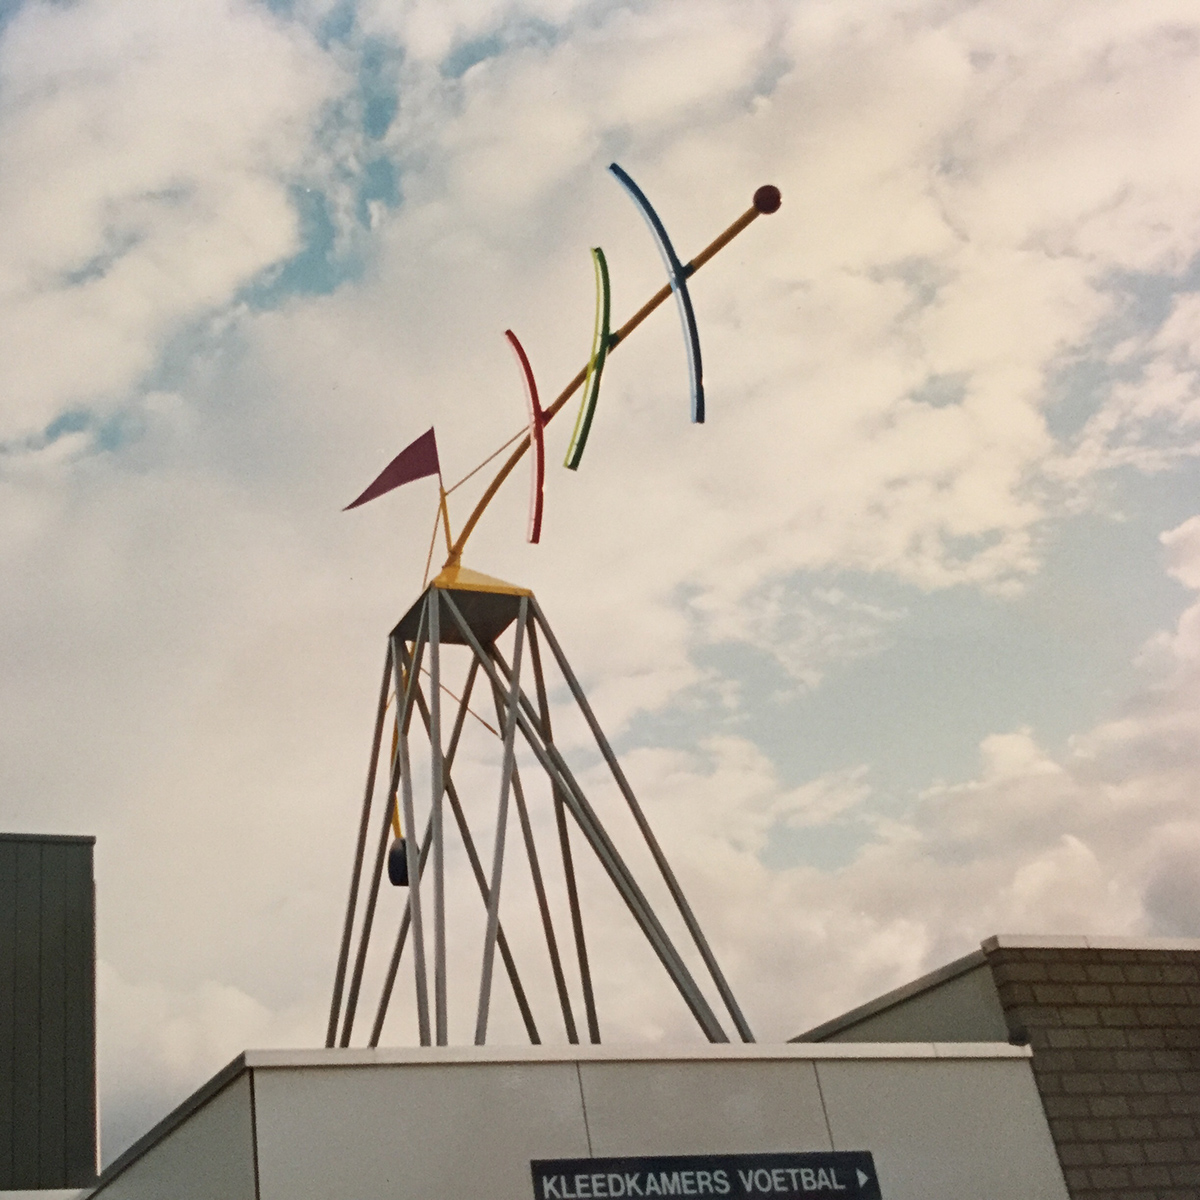 Kunstwerk op dak van sportcomplex in Stompwijk (Jozef van der Horst)